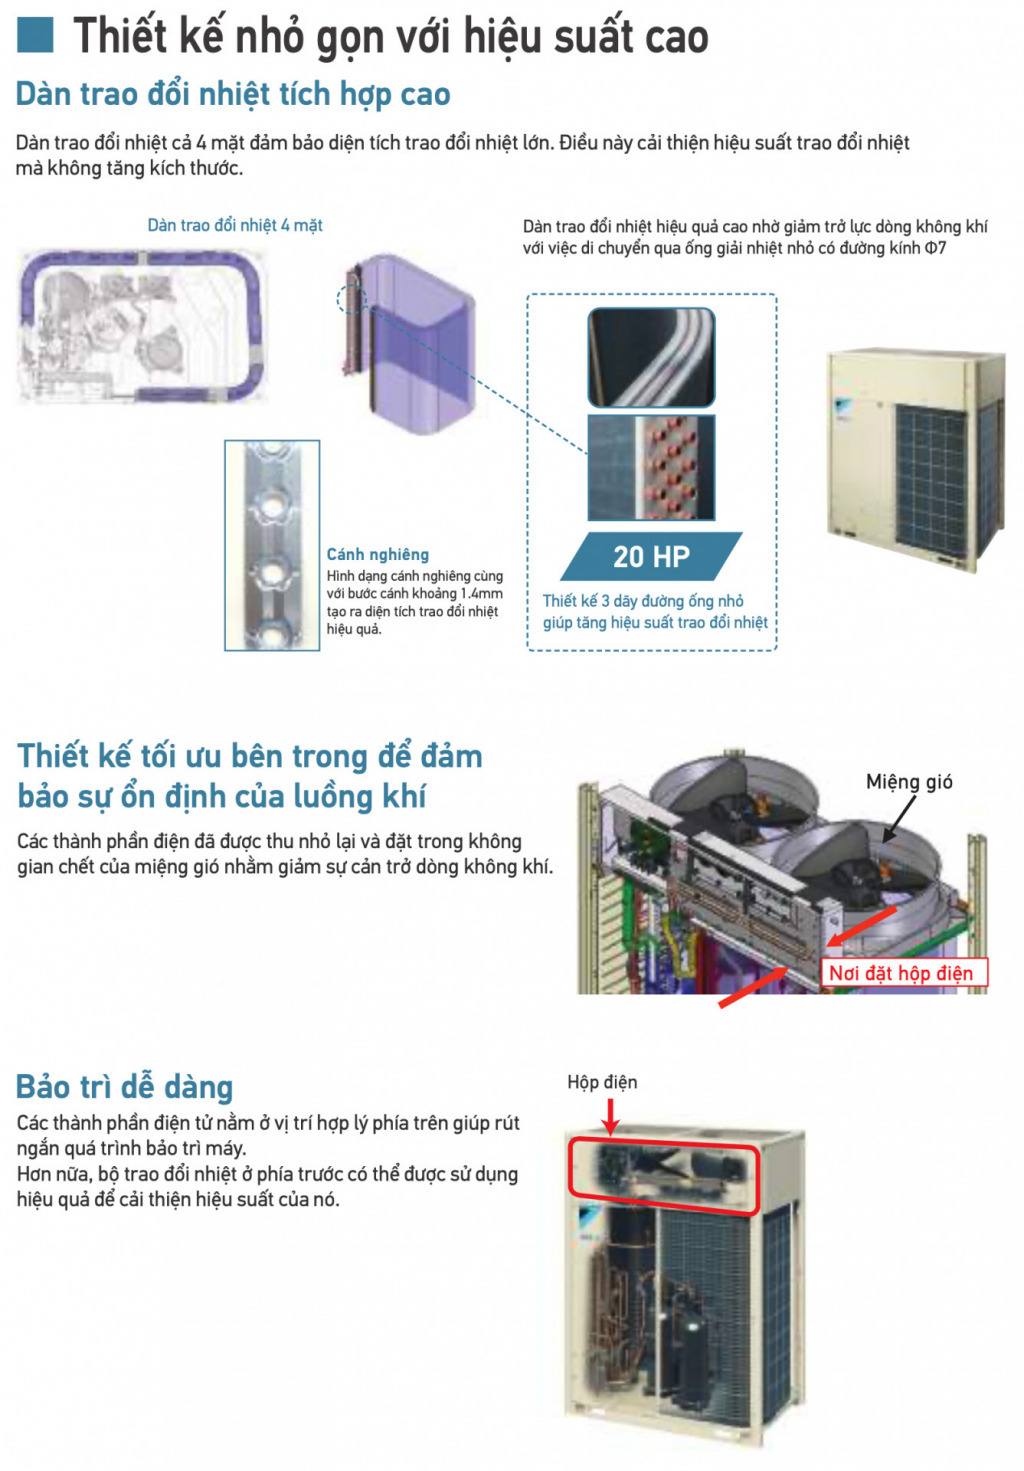 Giới thiệu máy lạnh trung tâm Daikin VRV X (2020)